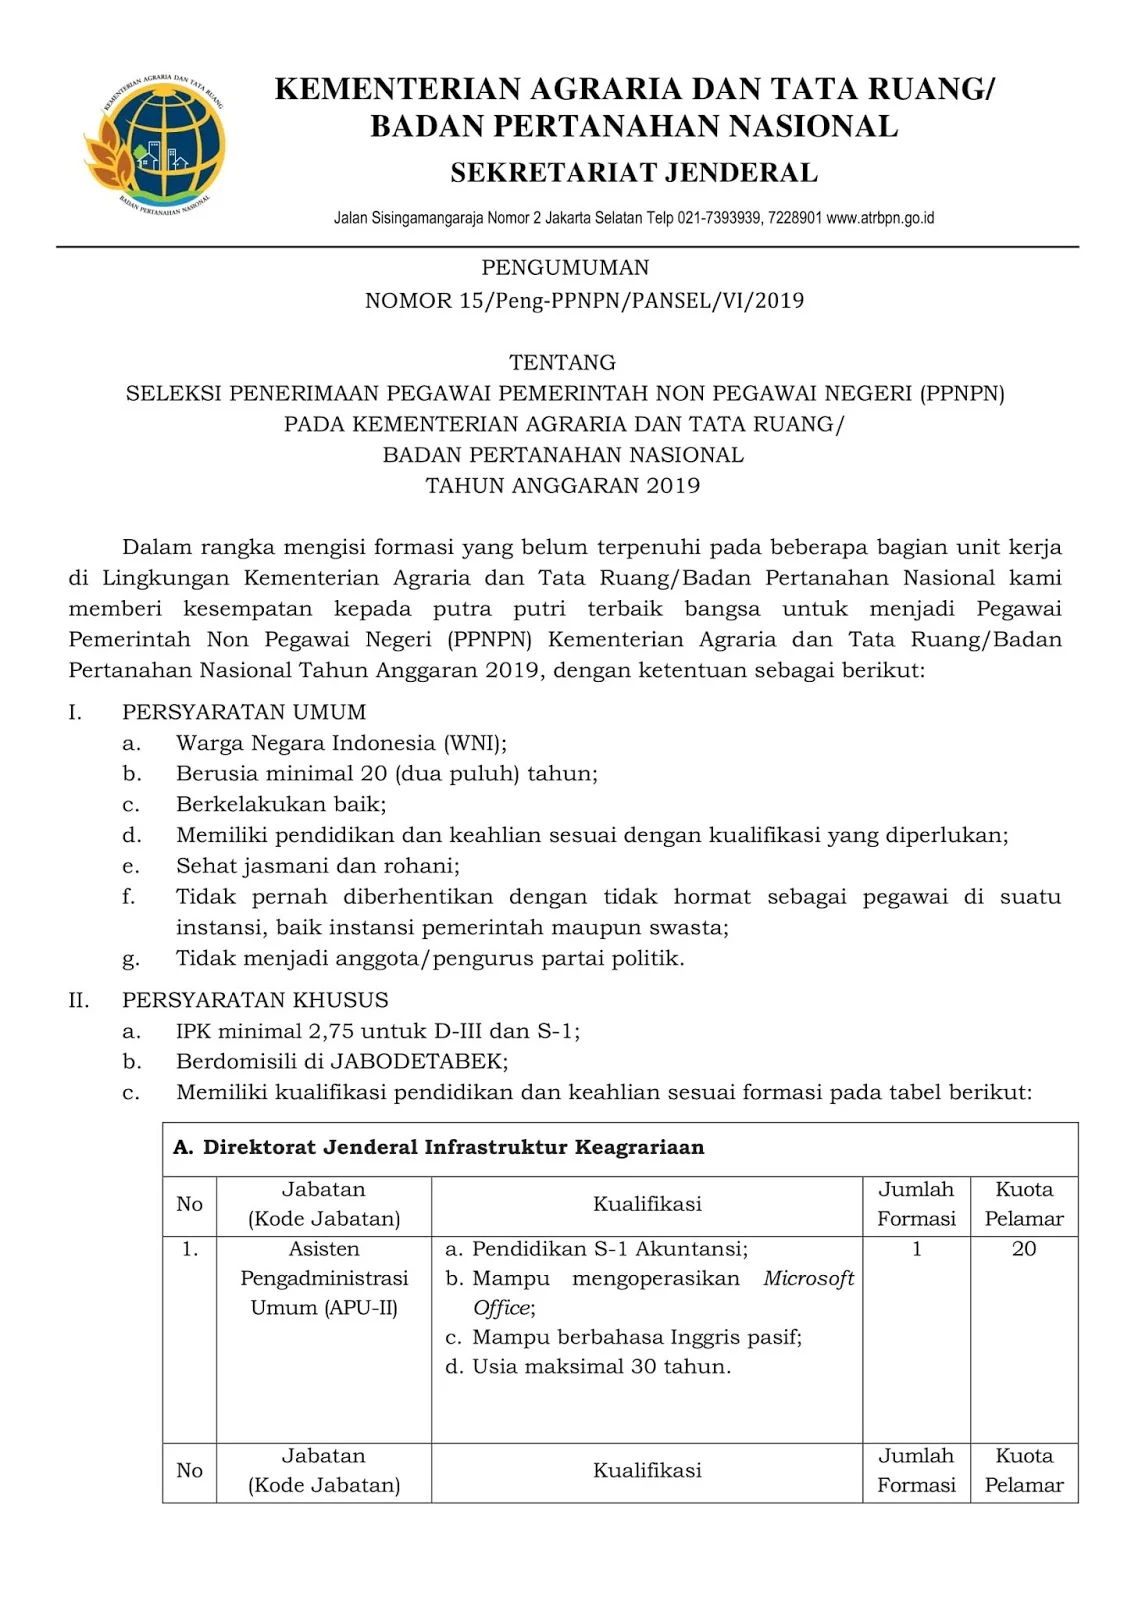 Rekrutmen Non Pegawai PPNPN Kementerian Agraria dan Tata Ruang Minimal SMA D3 S1 Tahun Anggaran 2019